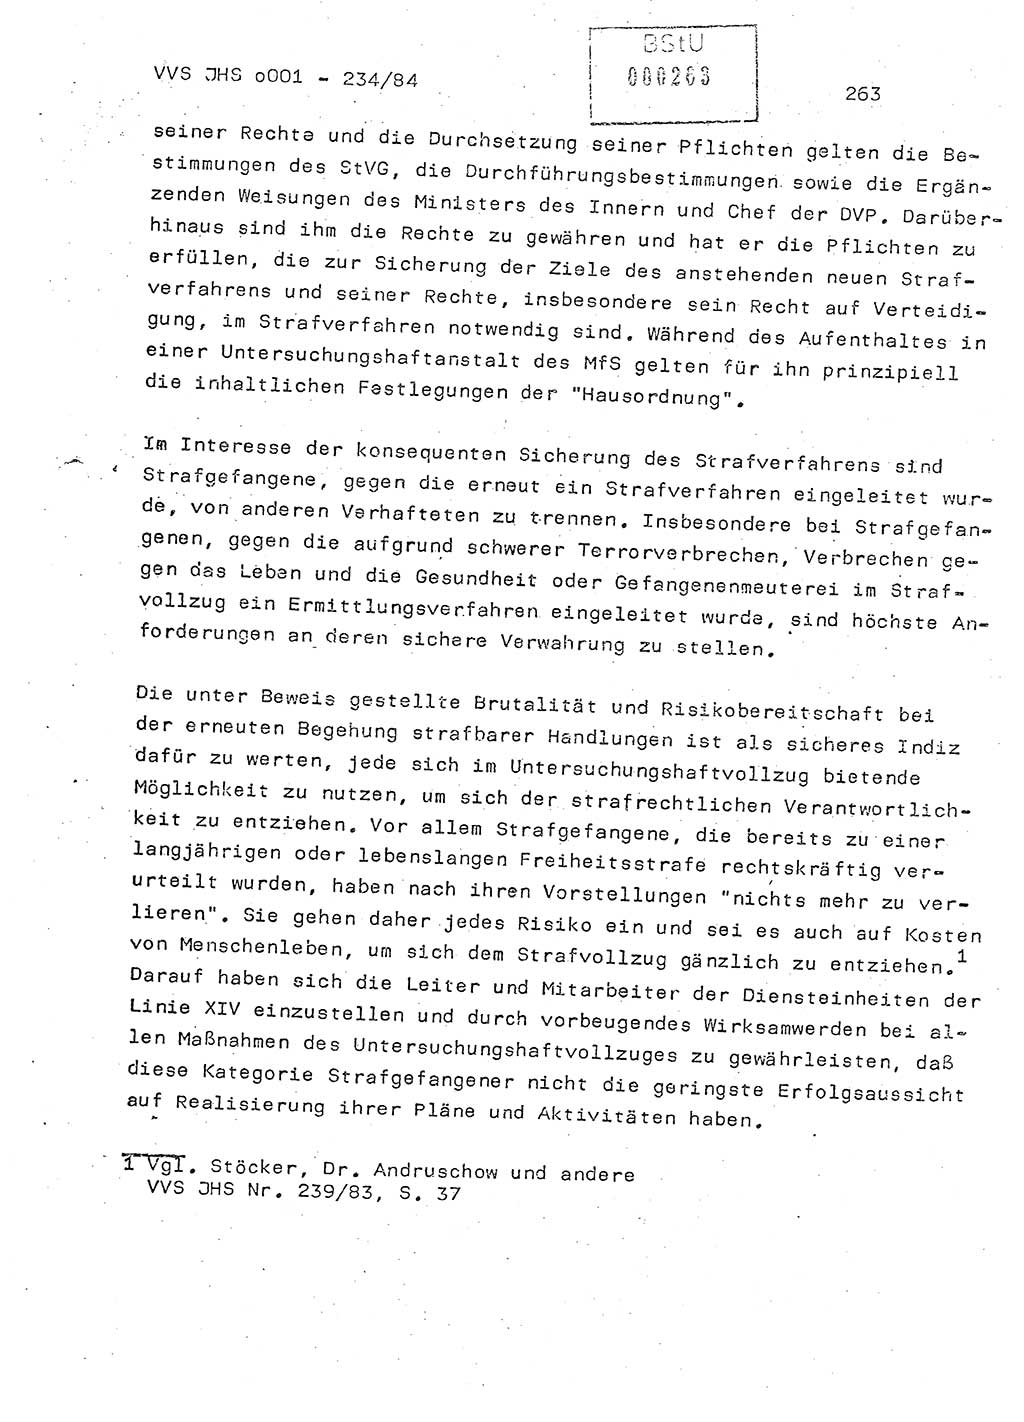 Dissertation Oberst Siegfried Rataizick (Abt. ⅩⅣ), Oberstleutnant Volkmar Heinz (Abt. ⅩⅣ), Oberstleutnant Werner Stein (HA Ⅸ), Hauptmann Heinz Conrad (JHS), Ministerium für Staatssicherheit (MfS) [Deutsche Demokratische Republik (DDR)], Juristische Hochschule (JHS), Vertrauliche Verschlußsache (VVS) o001-234/84, Potsdam 1984, Seite 263 (Diss. MfS DDR JHS VVS o001-234/84 1984, S. 263)